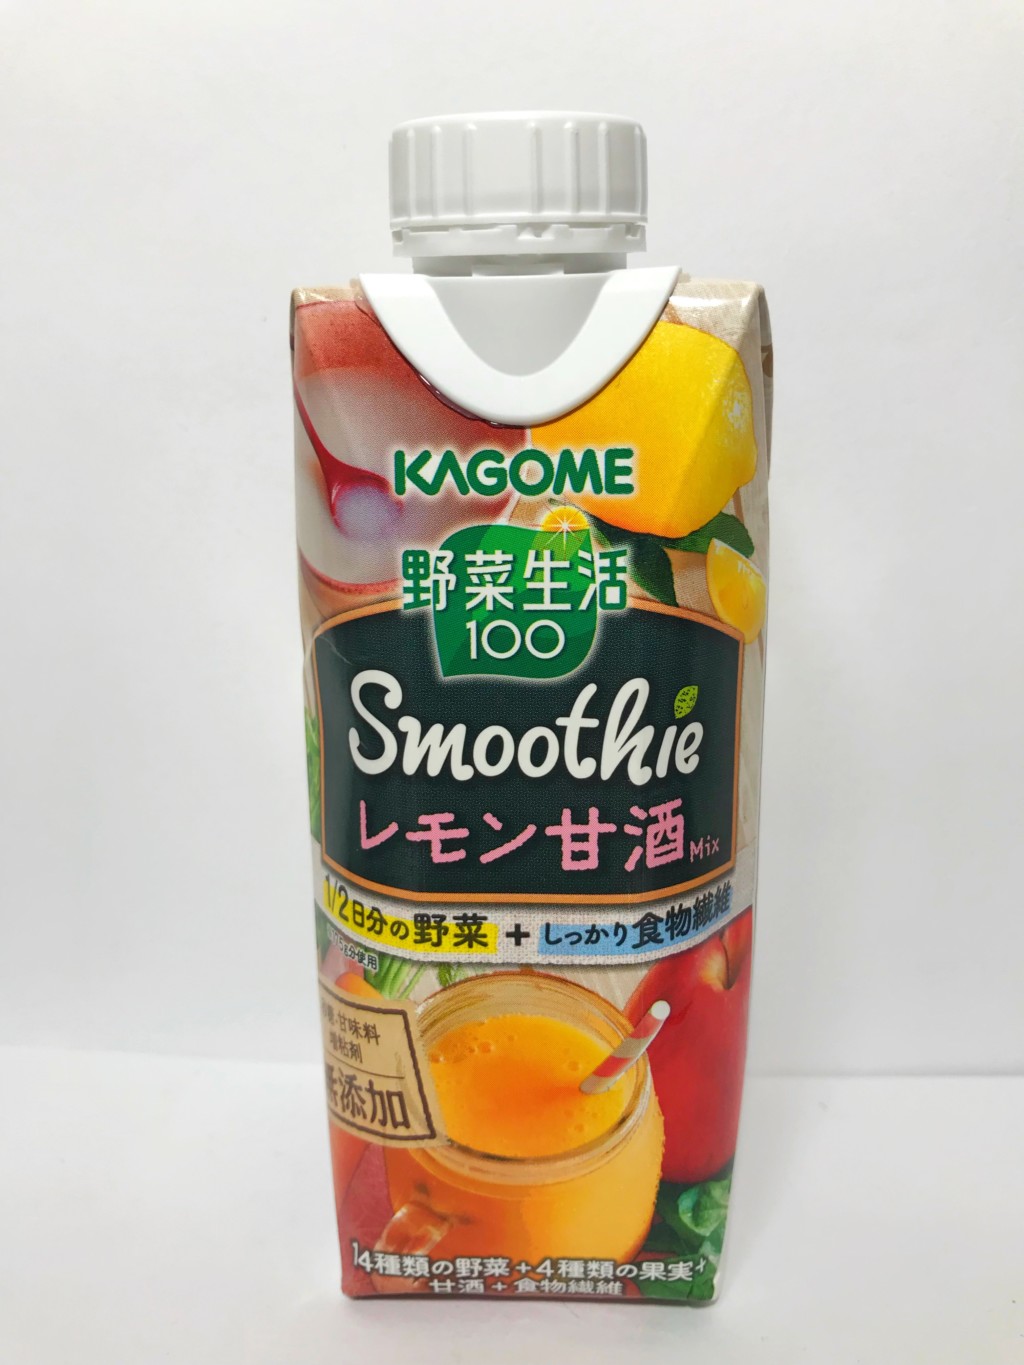 カゴメの甘酒スムージー『Smoothieレモン甘酒Mix』